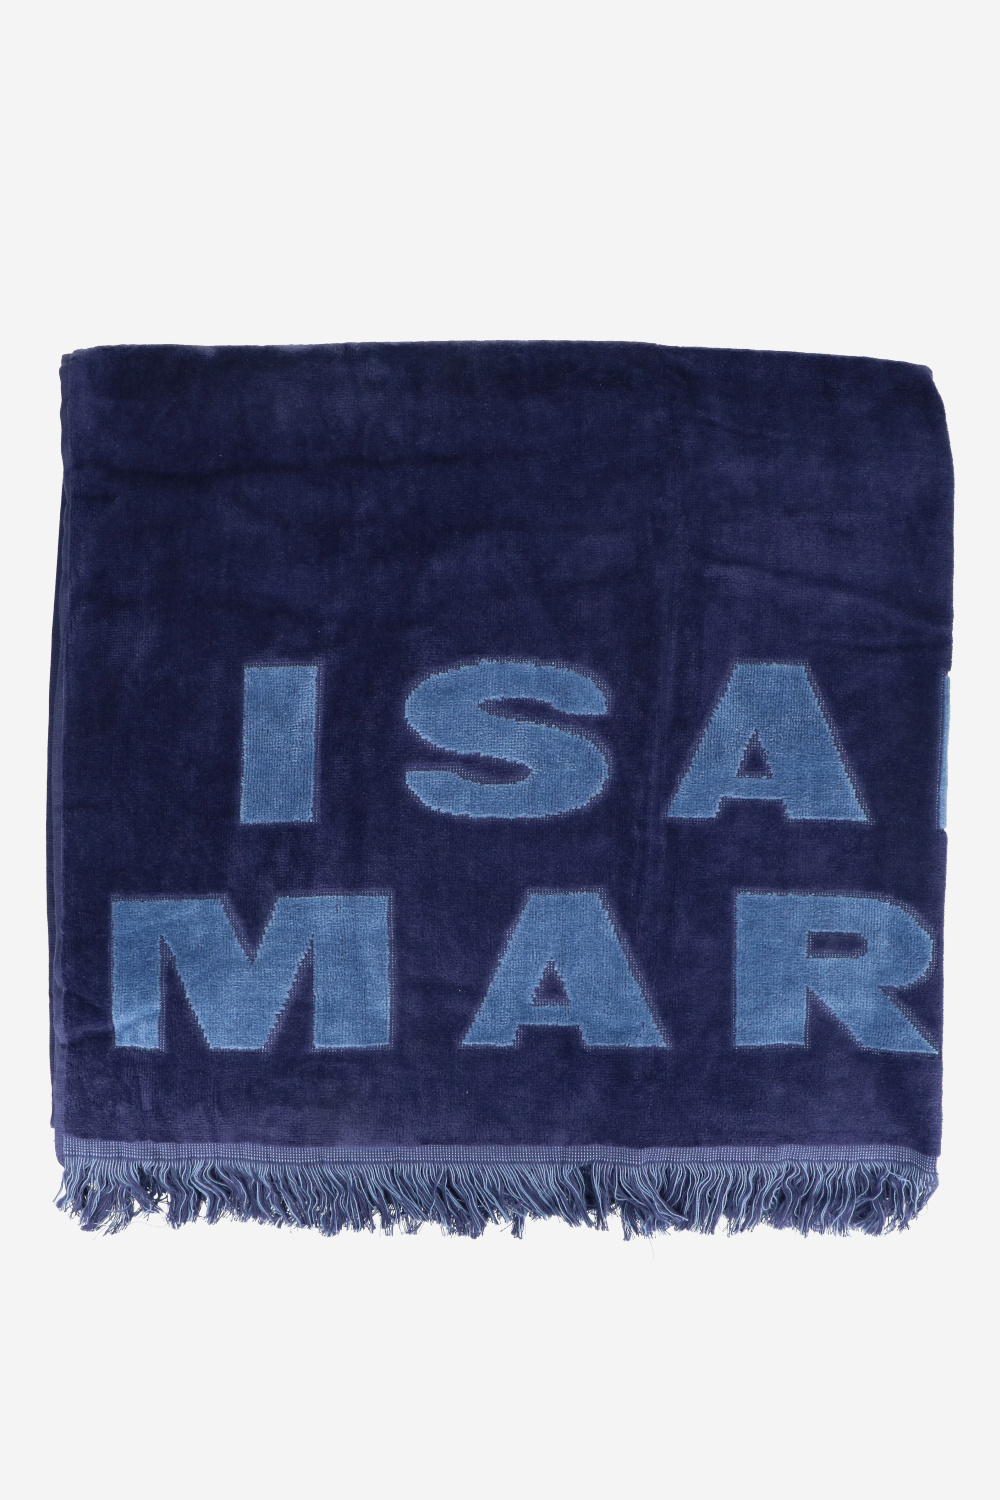 Isabel Marant Handdoeken Blauw